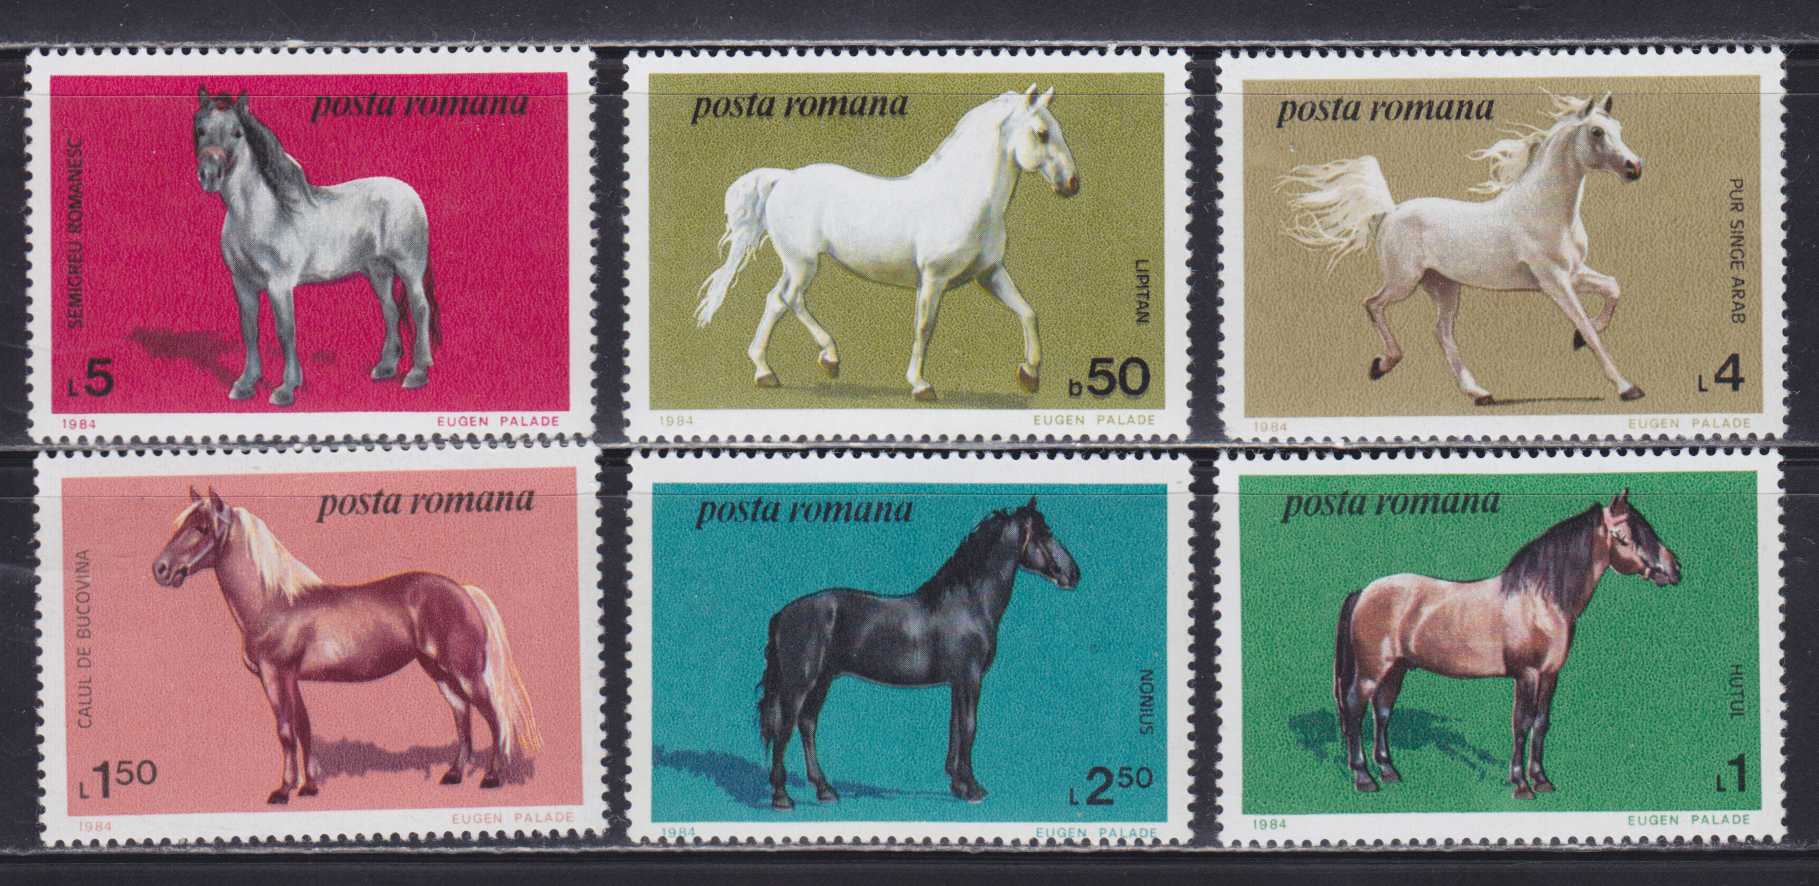 Лошадка марка. Марки лошади. Лошади на почтовых марках. Коллекционирование марок лошади.